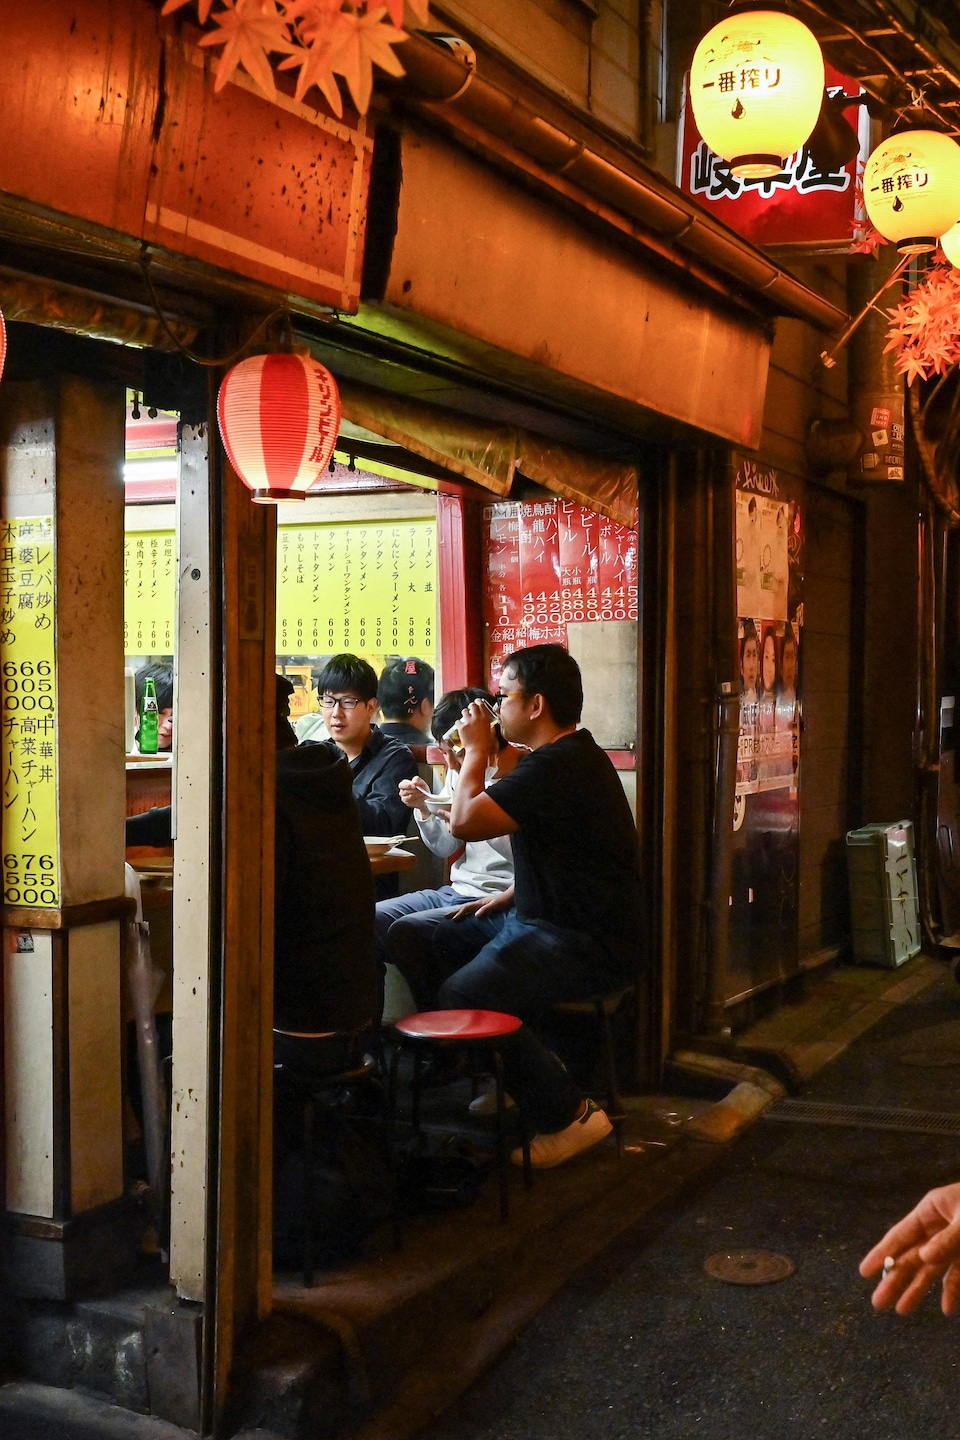 Des personnes appréciant la vie nocturne de Tokyo dans des petits restaurants de rue.